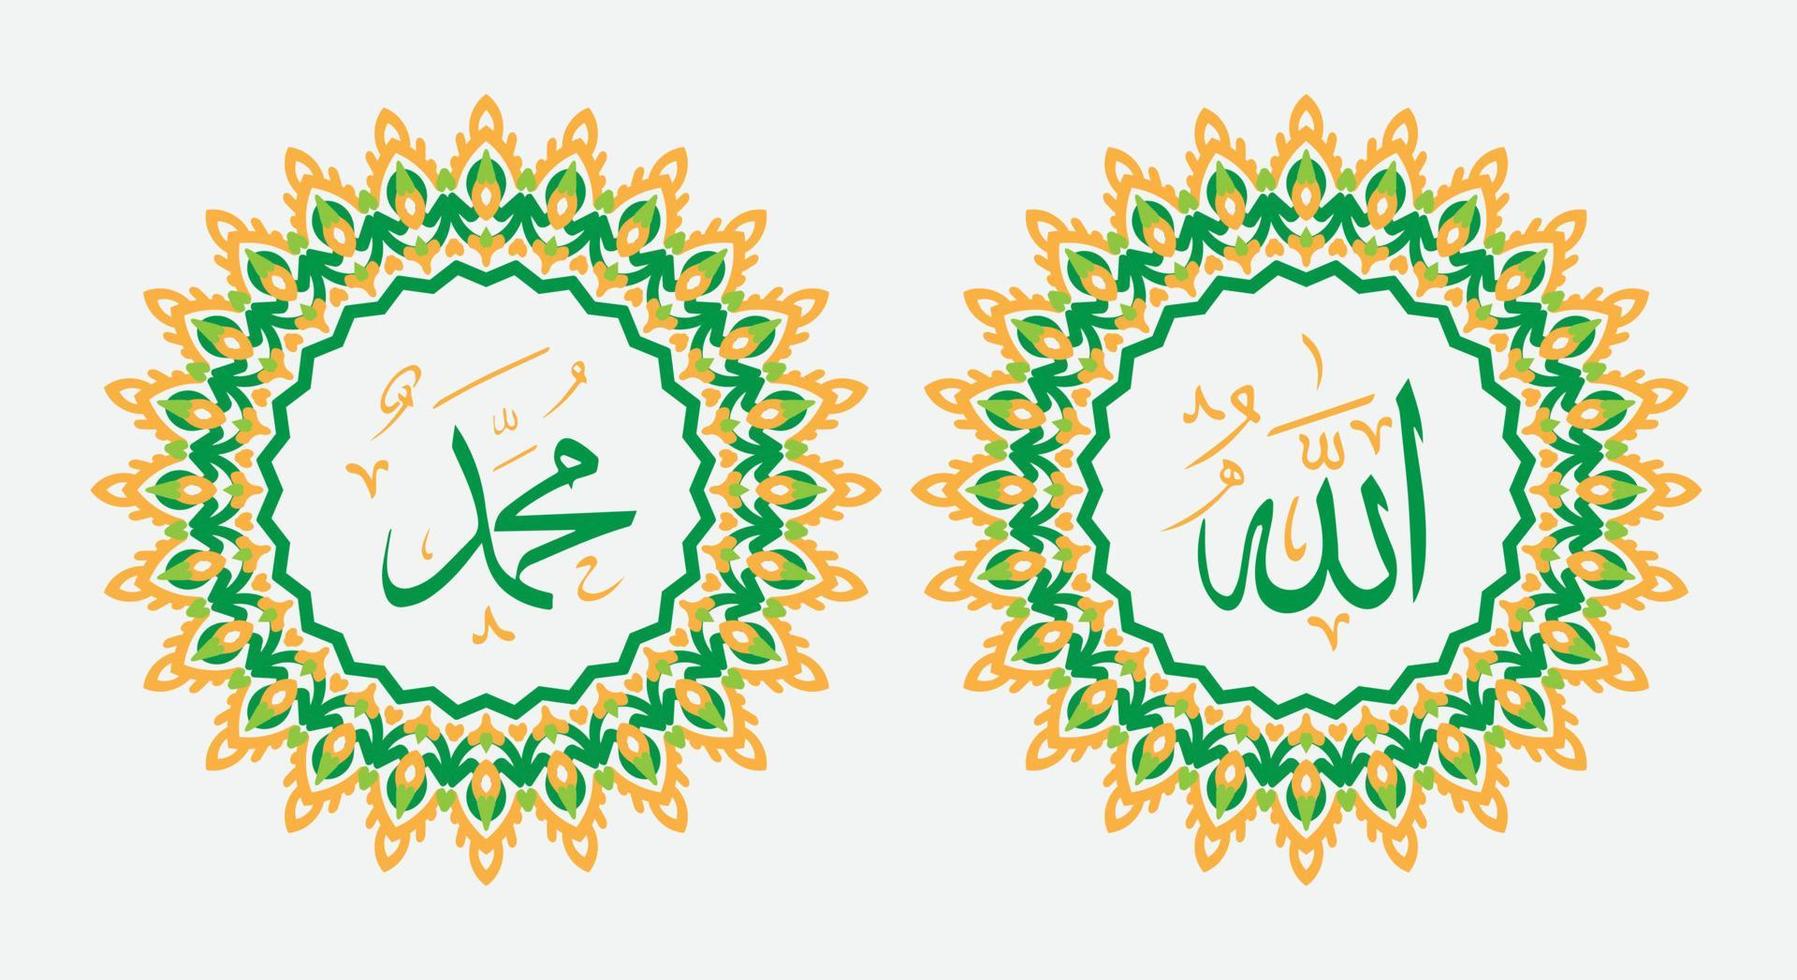 allah muhammad caligrafia árabe com ornamento redondo e cor fria vetor